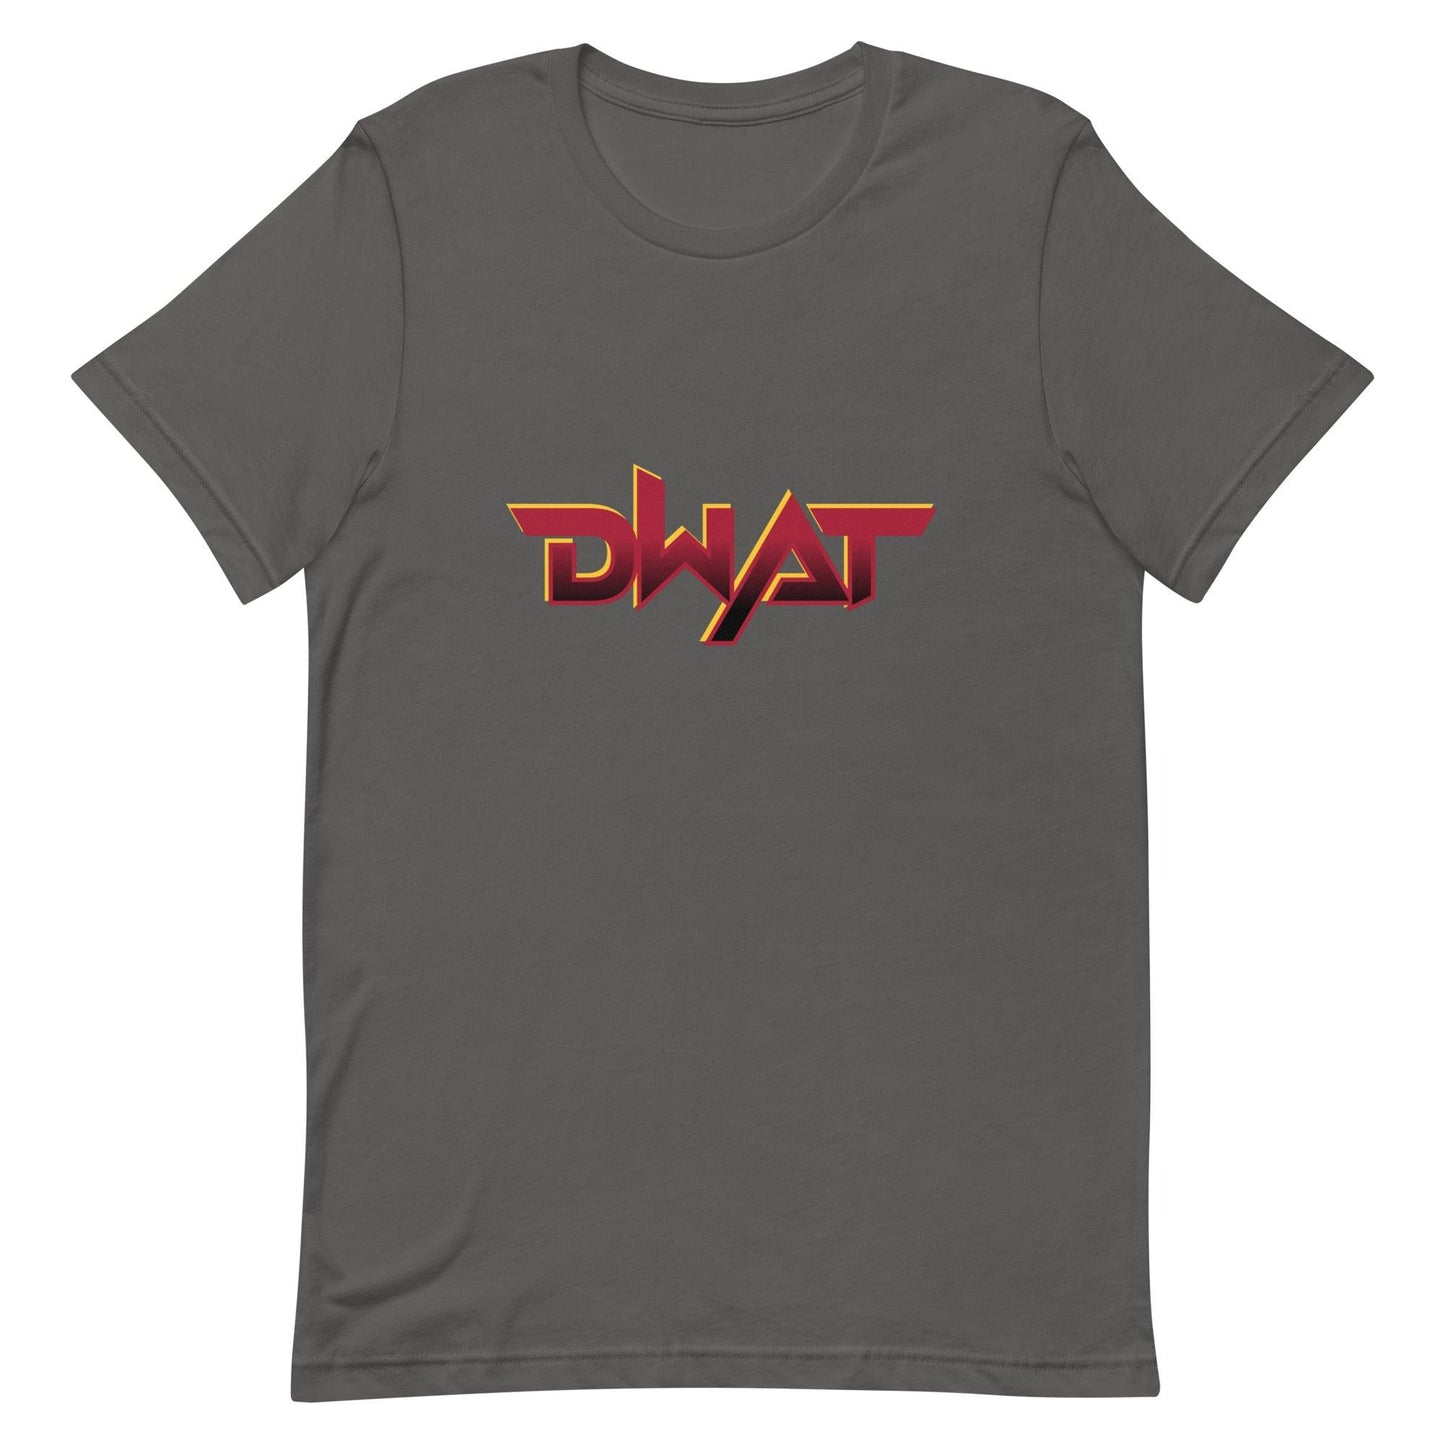 Demarion Watson "DWAT" t-shirt - Fan Arch